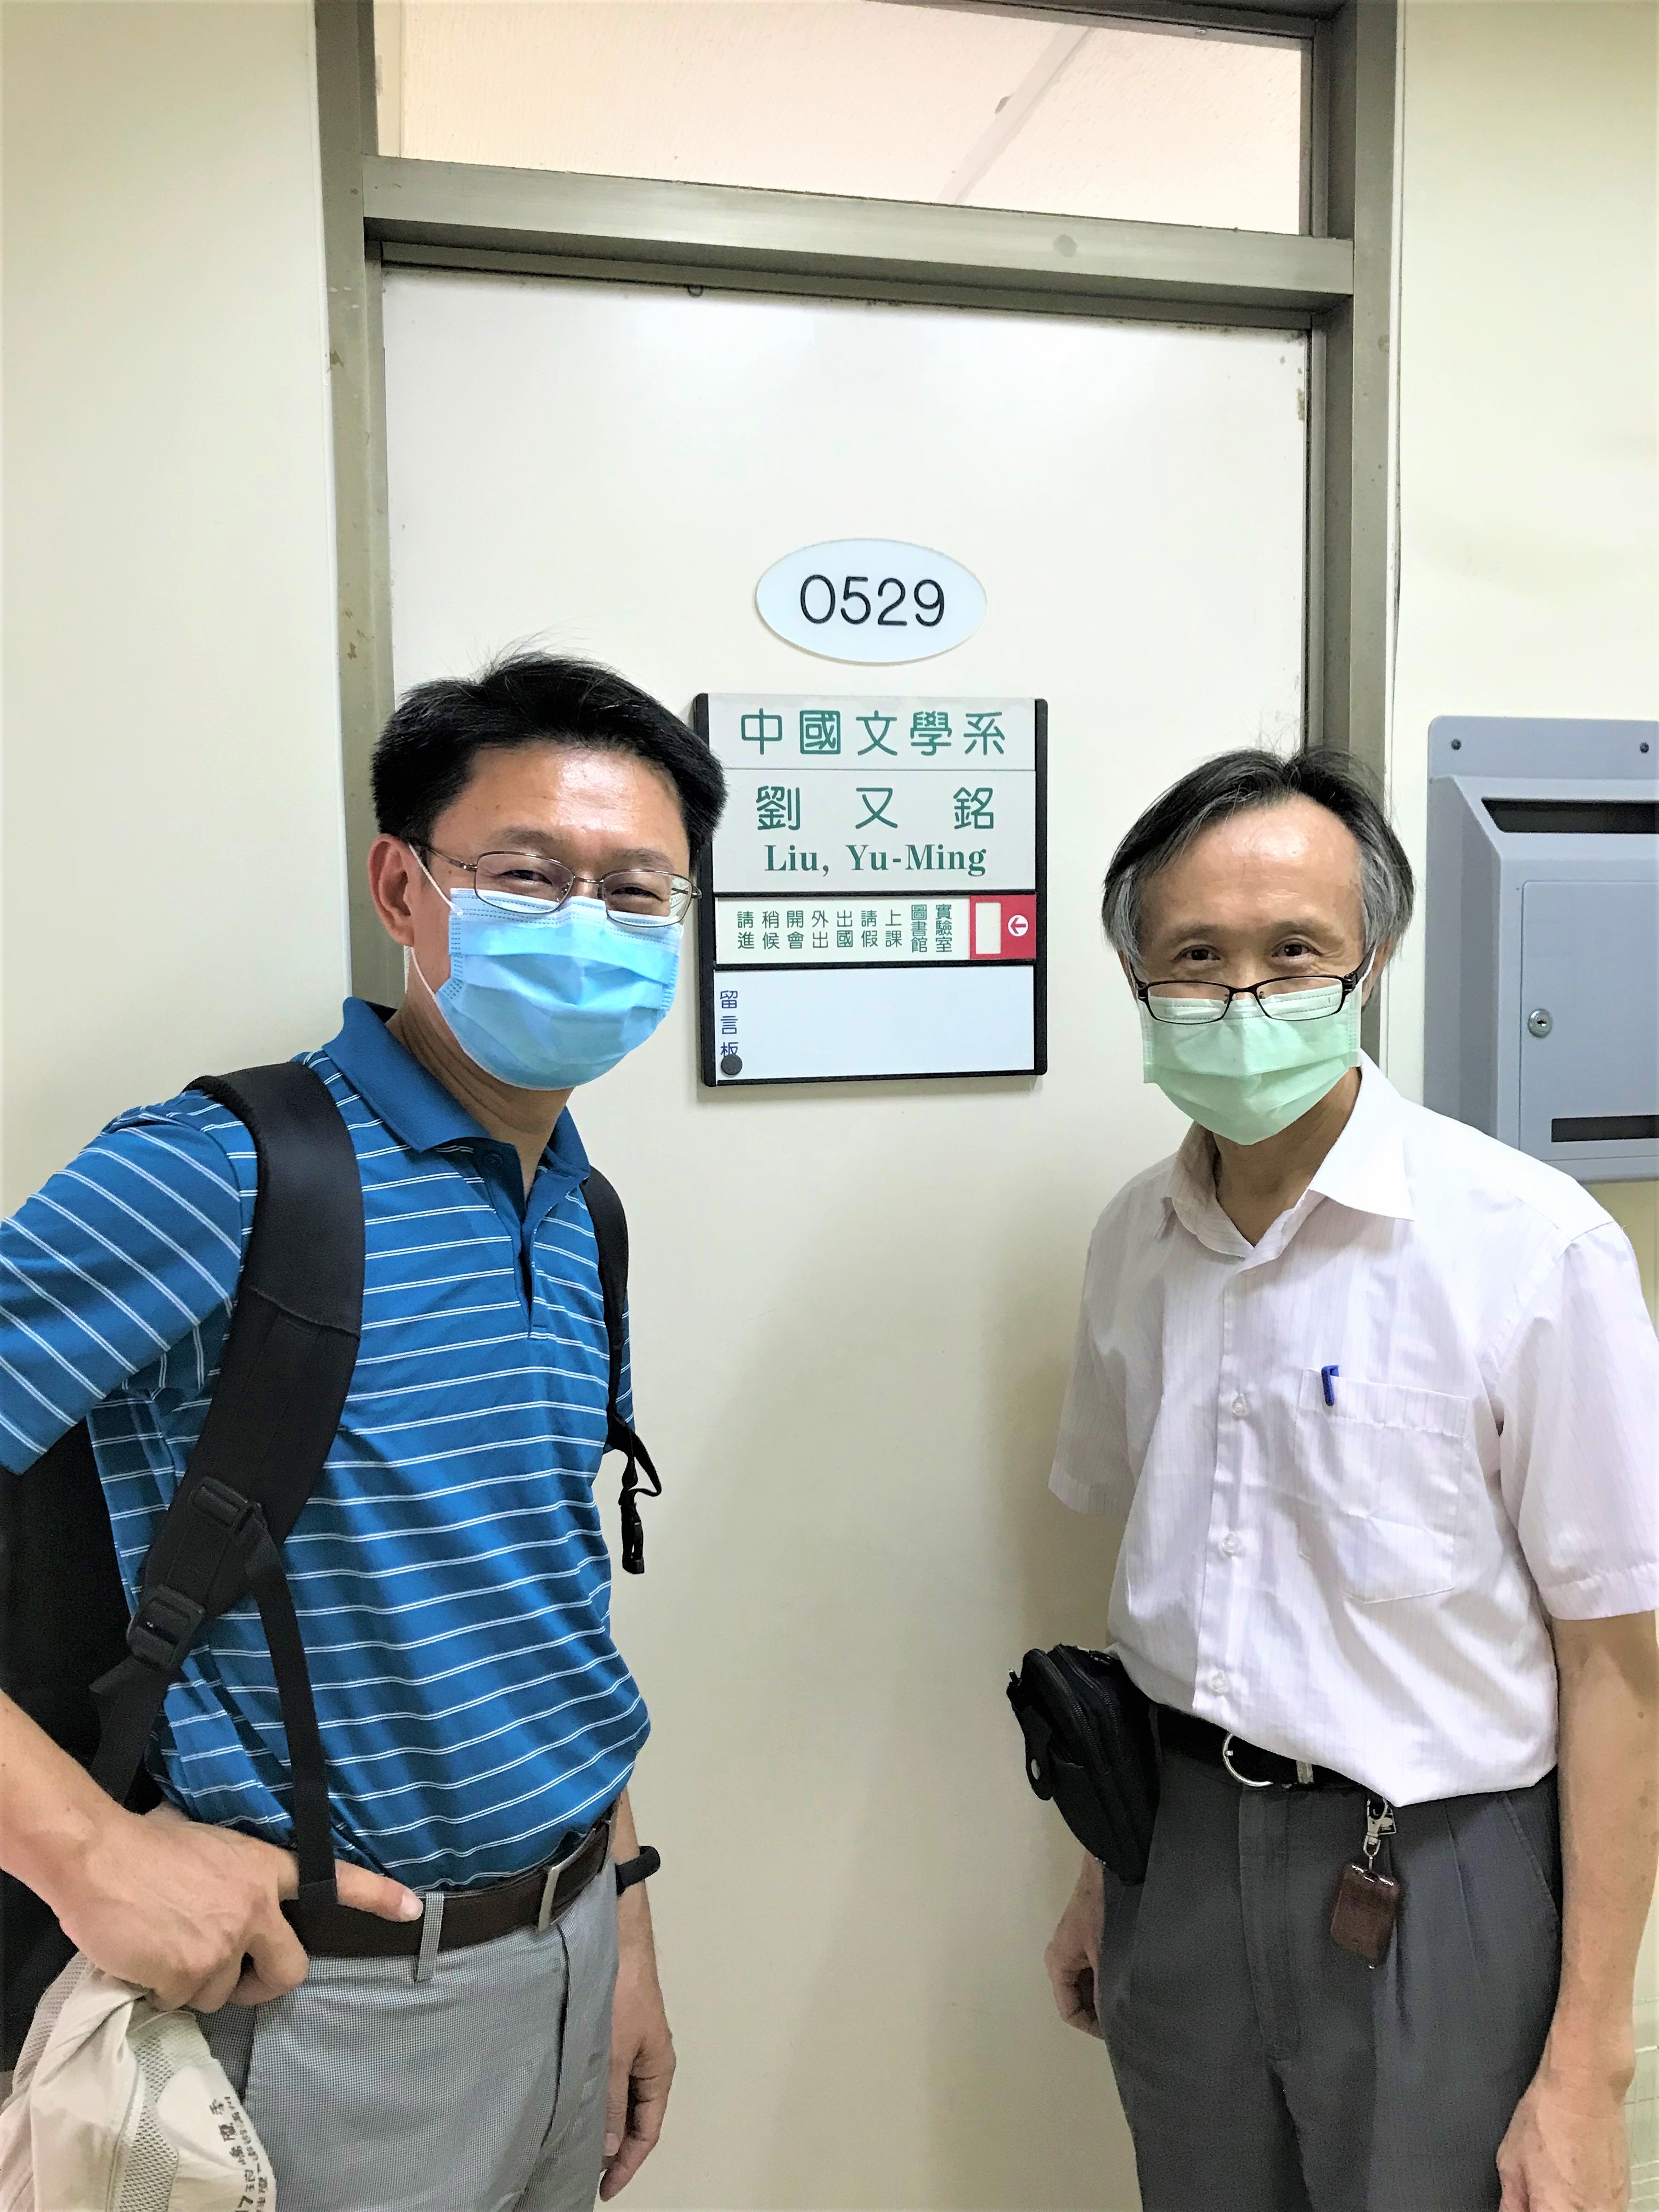 檔案:劉又銘老師和我在研究室門前的留影.jpg